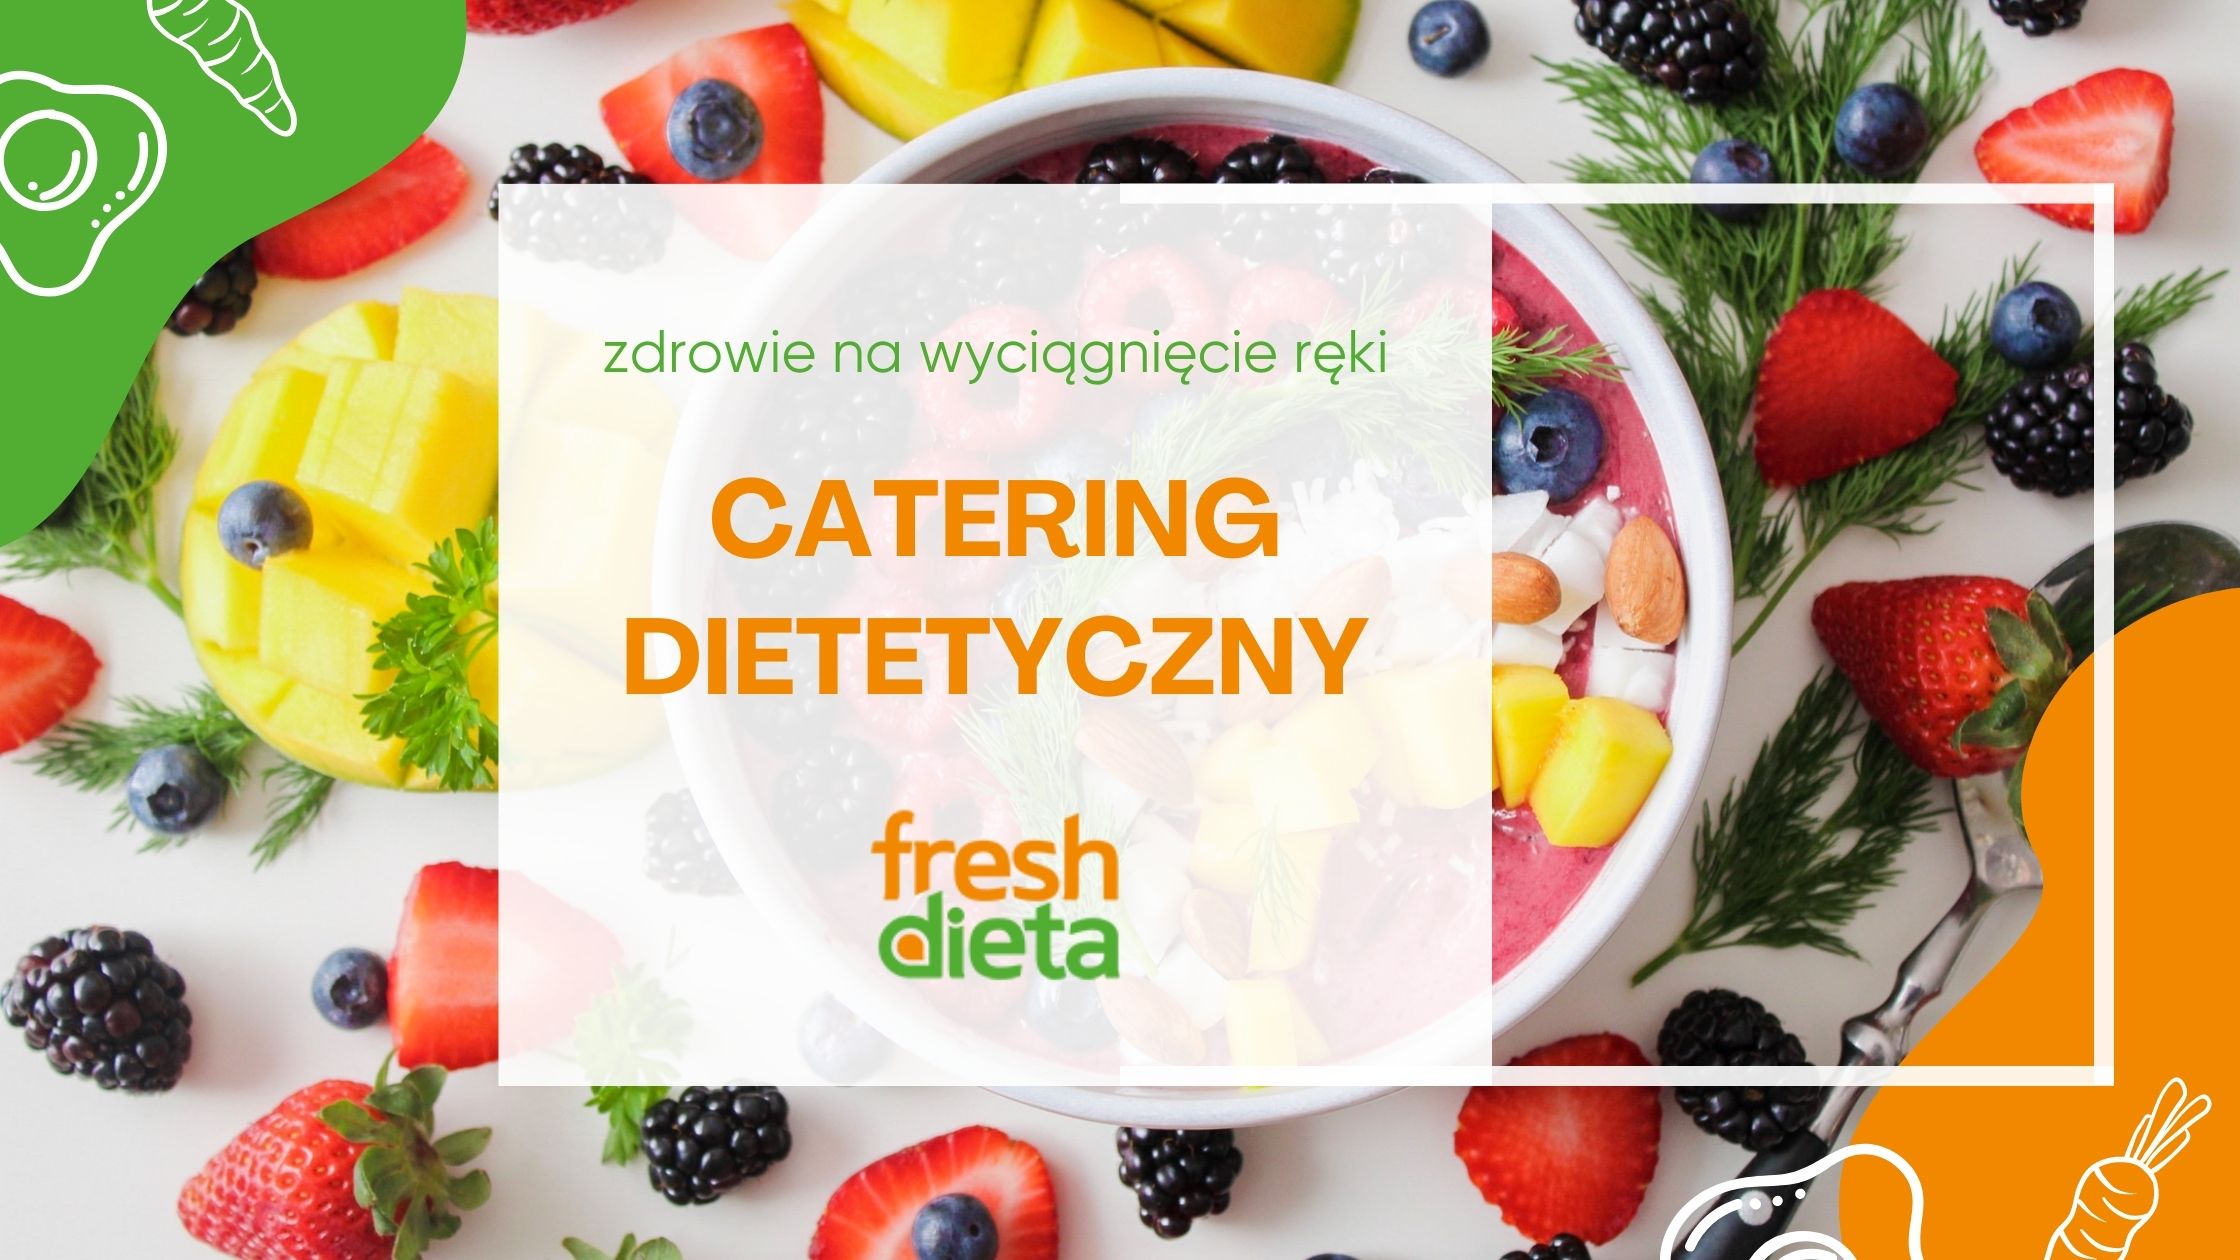 Catering dietetyczny: zdrowie na wyciągnięcie ręki